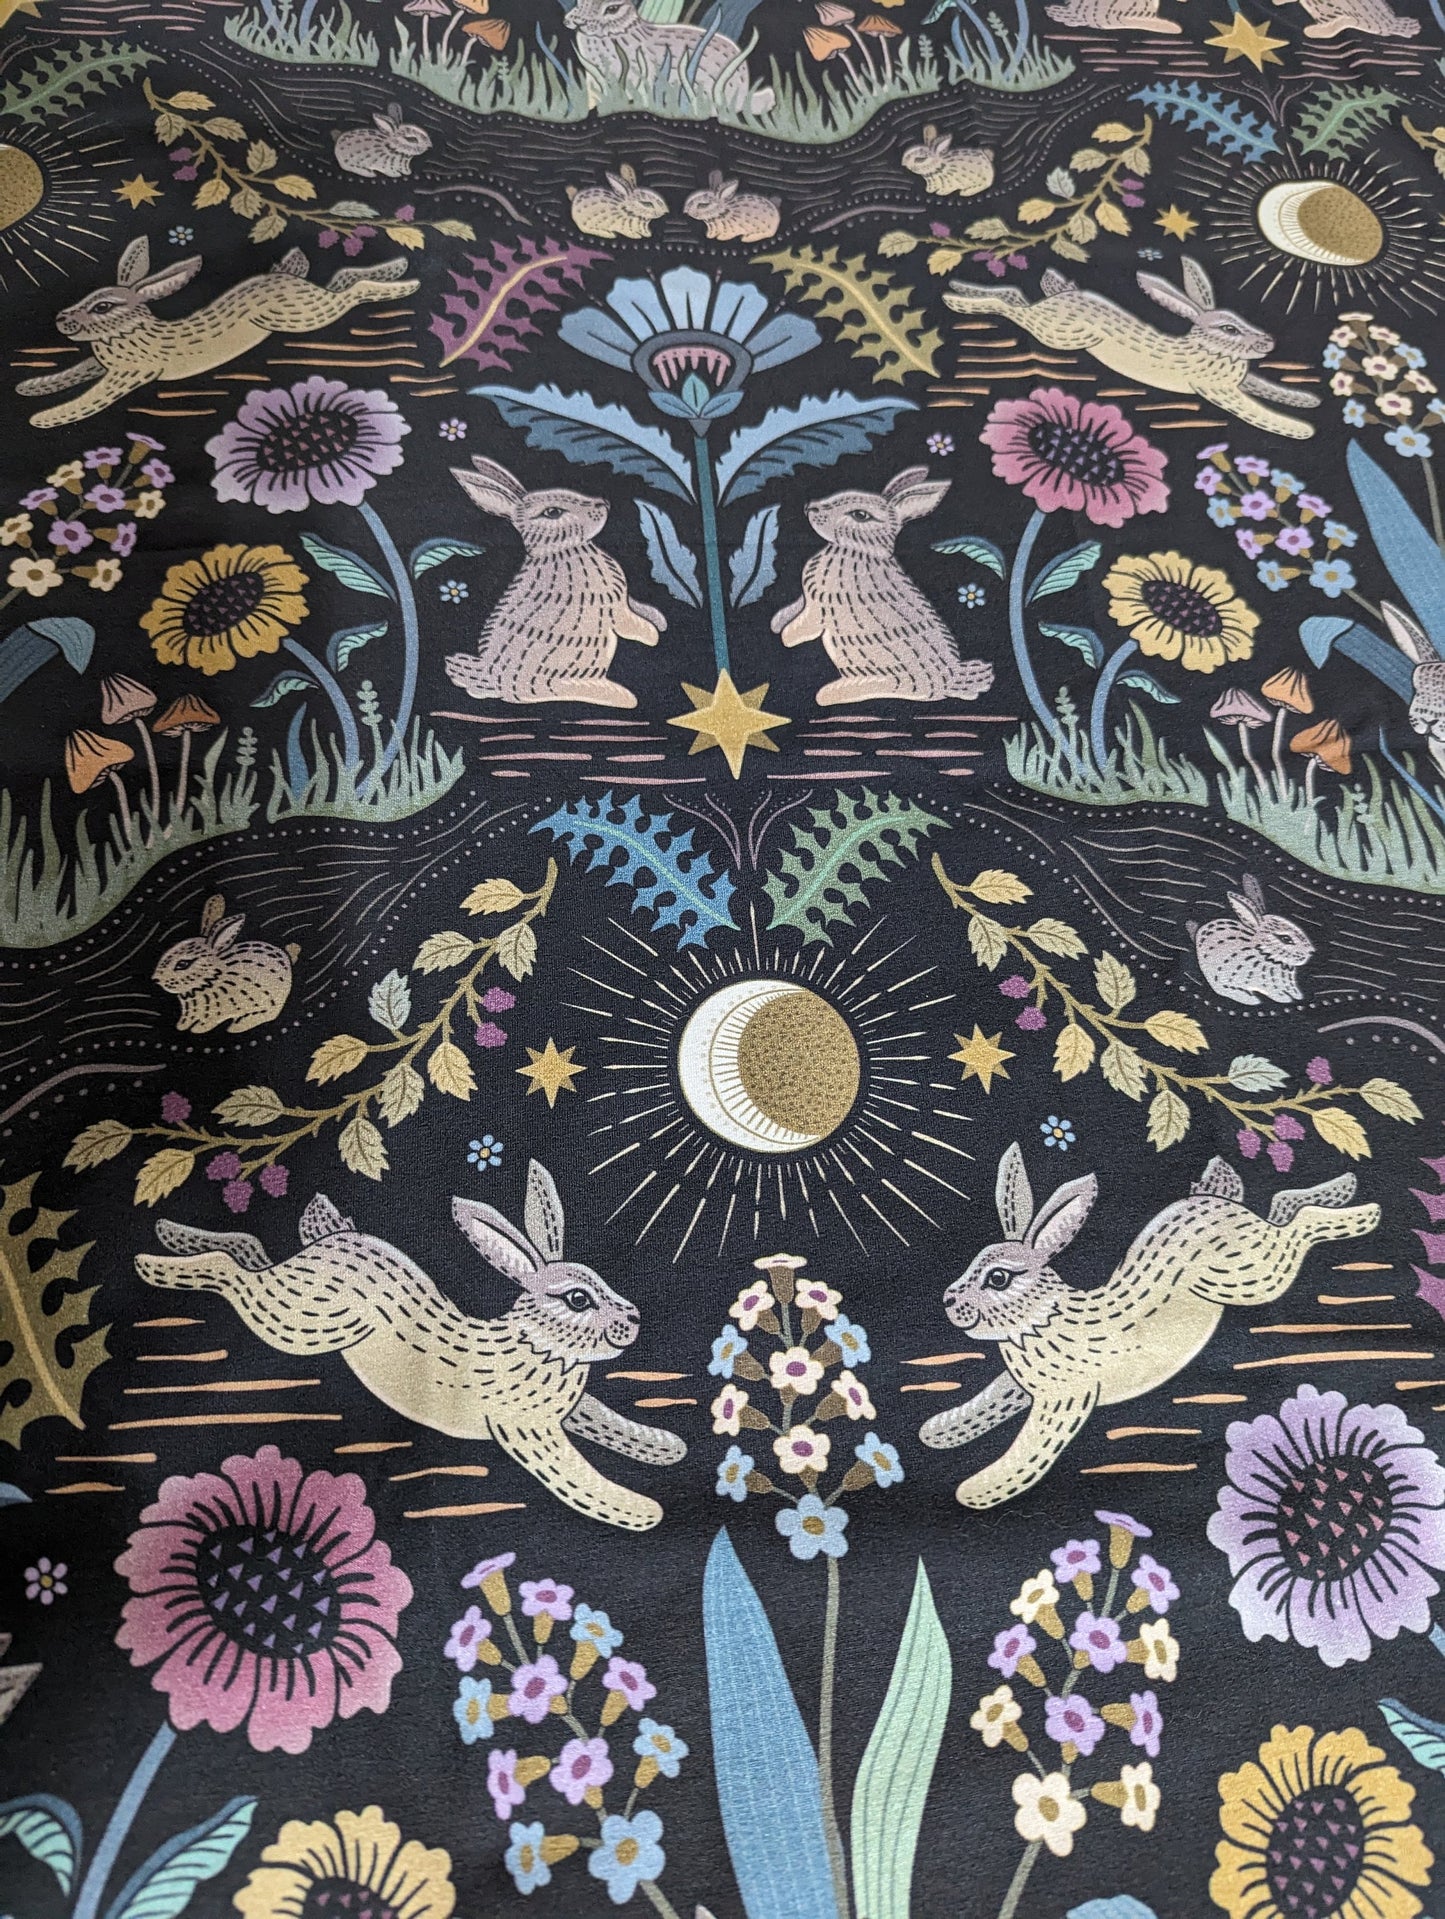 Woodland Swaddle Set - Rabbit Blanket Mushroom Wrap Witchy Cottagecore Accessories